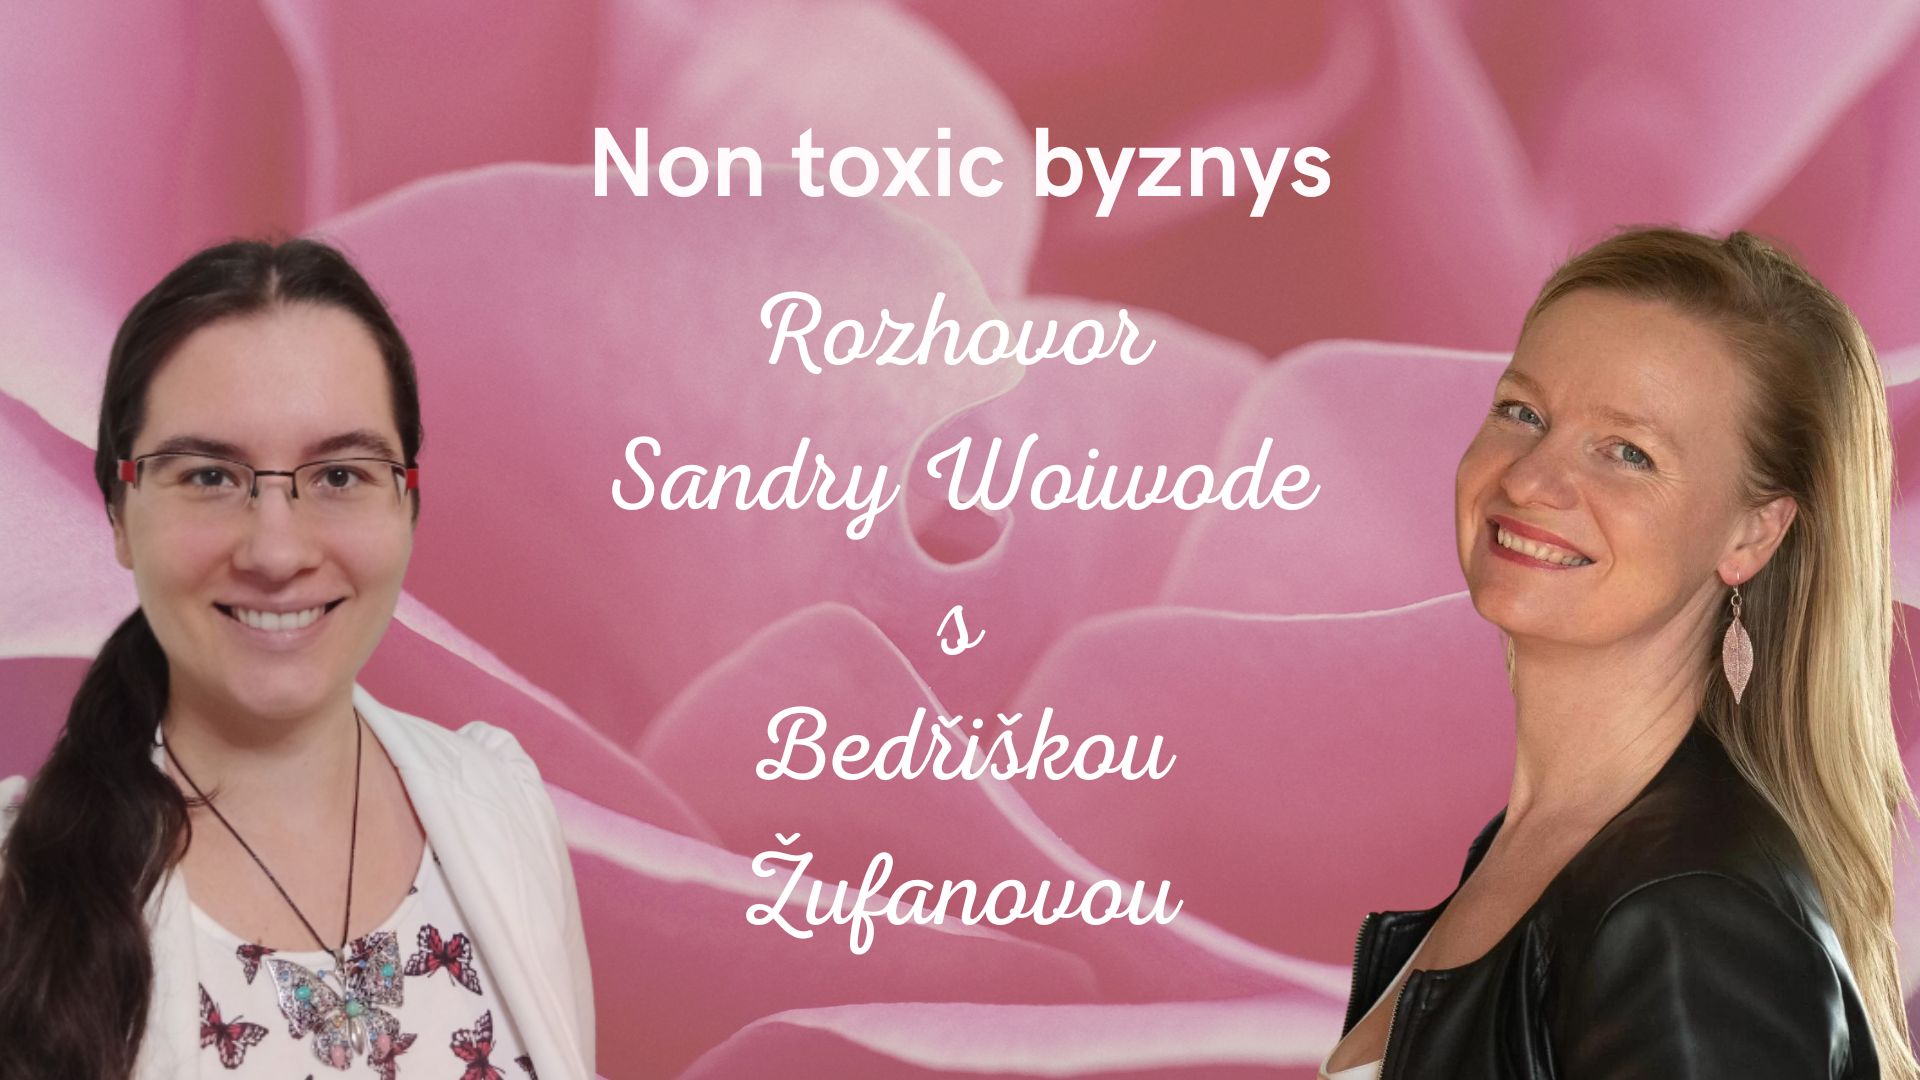 Přečtete si více ze článku Rozhovor s Bedřiškou Žufanovou na téma non toxic byznys